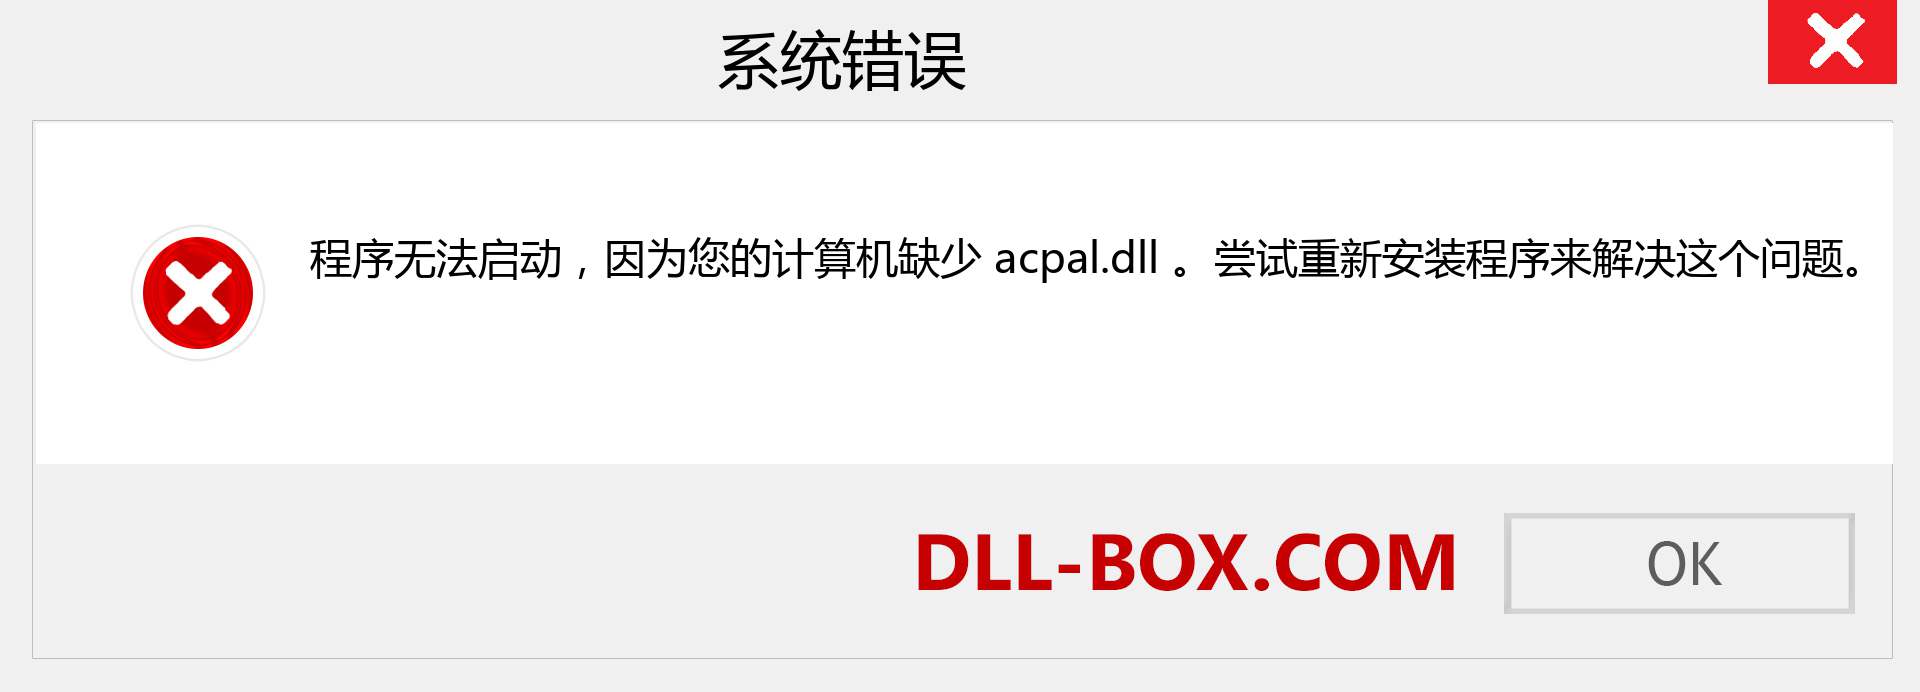 acpal.dll 文件丢失？。 适用于 Windows 7、8、10 的下载 - 修复 Windows、照片、图像上的 acpal dll 丢失错误